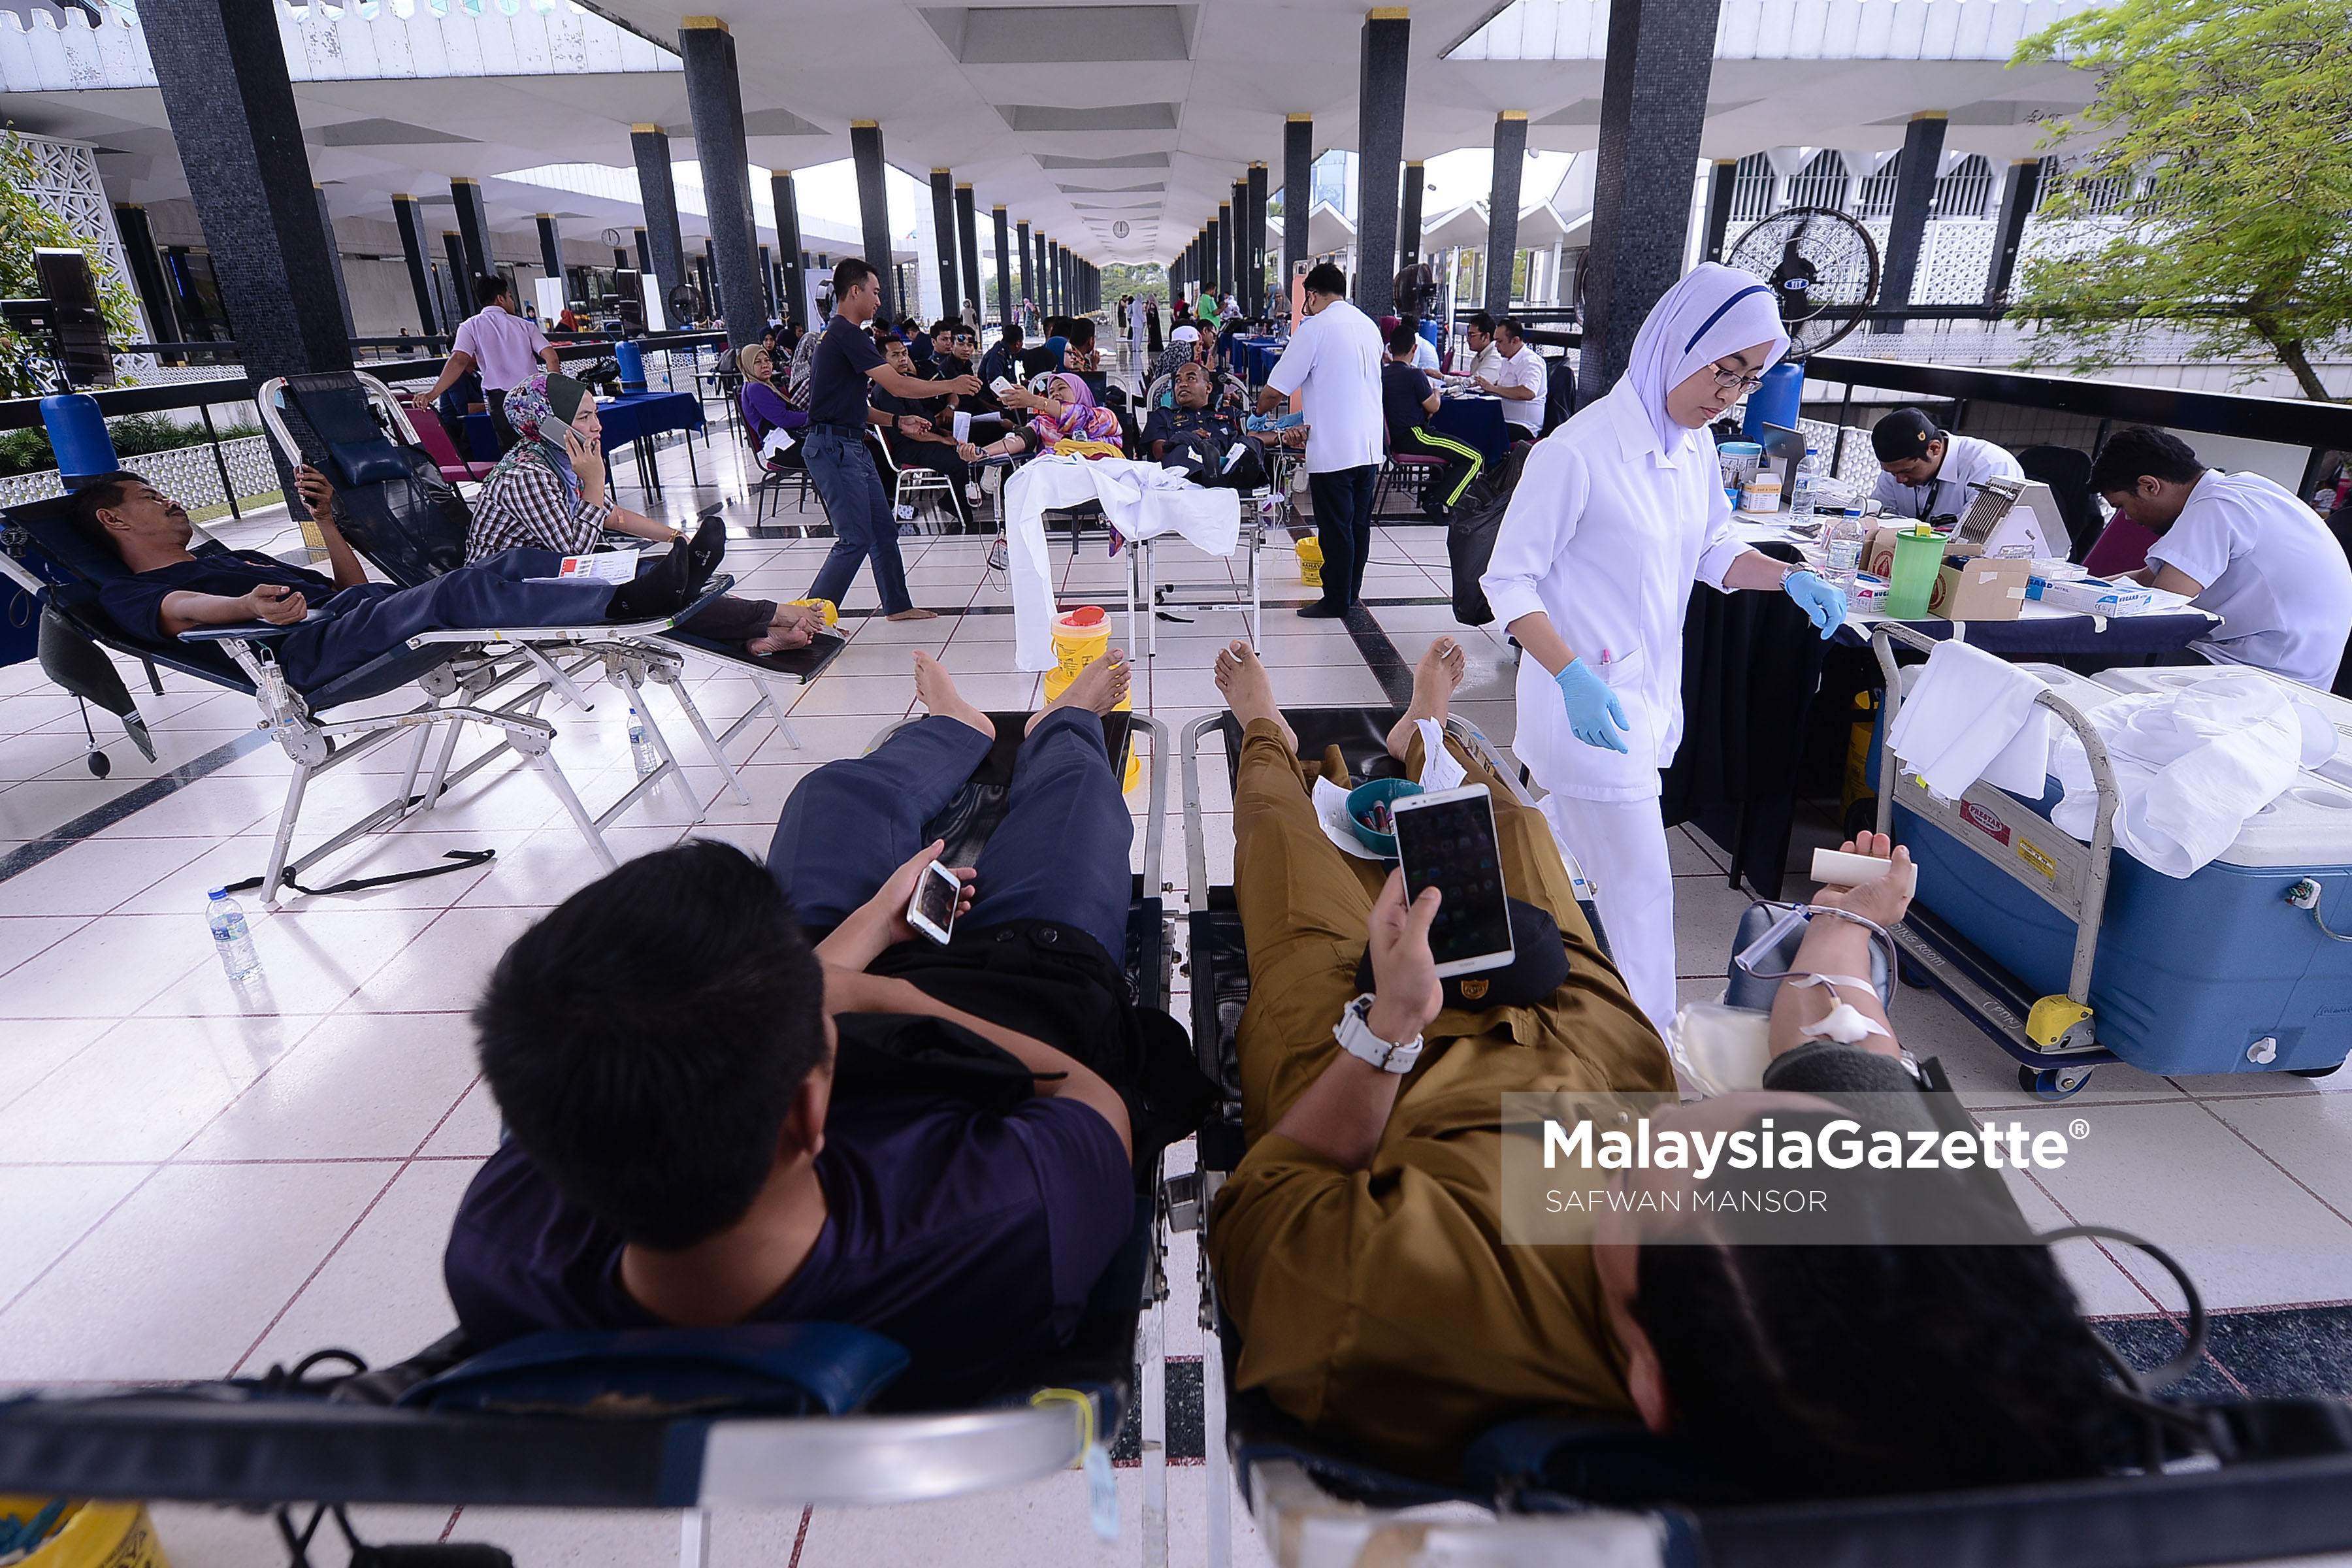 Penolong Pegawai Perubatan dan Jururawat dilihat sibuk menguruskan proses pengambilan darah di Masjid Negara, Kuala Lumpur. foto SAFWAN MANSOR, 17 MAC 2017 